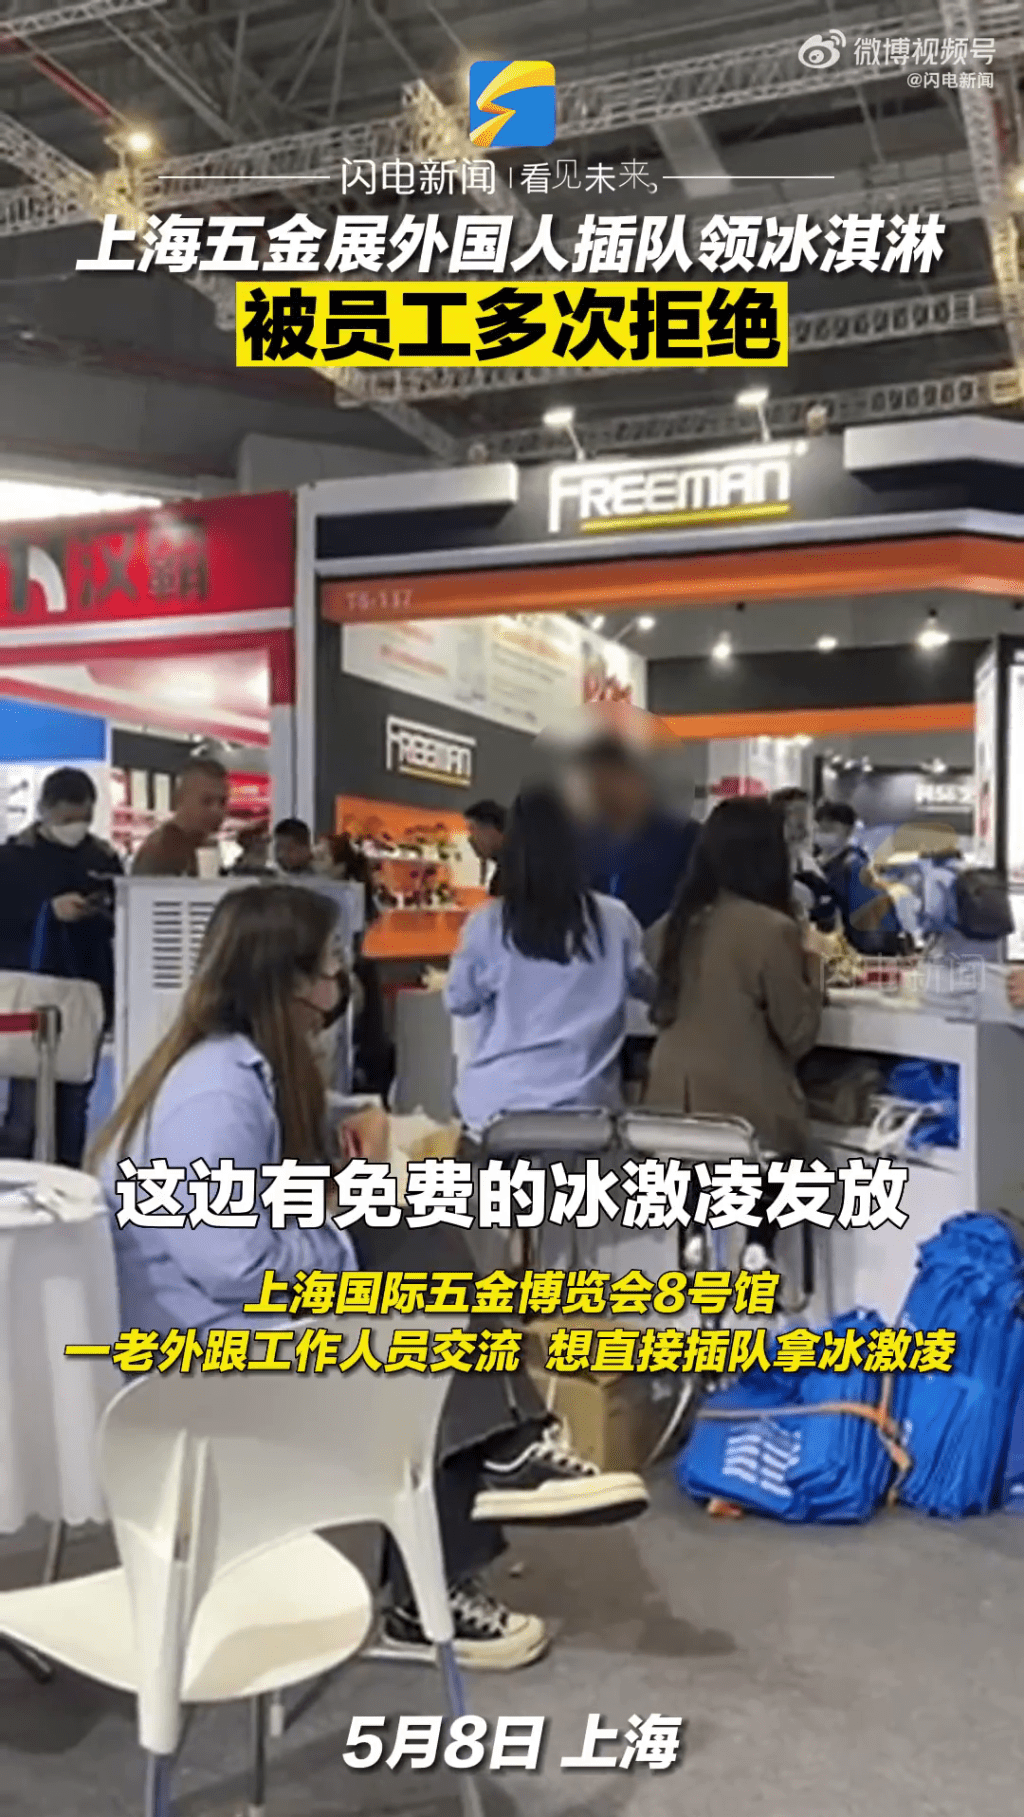 一名黑衫的外國人企圖打尖直接問工作人員拿免費雪糕。